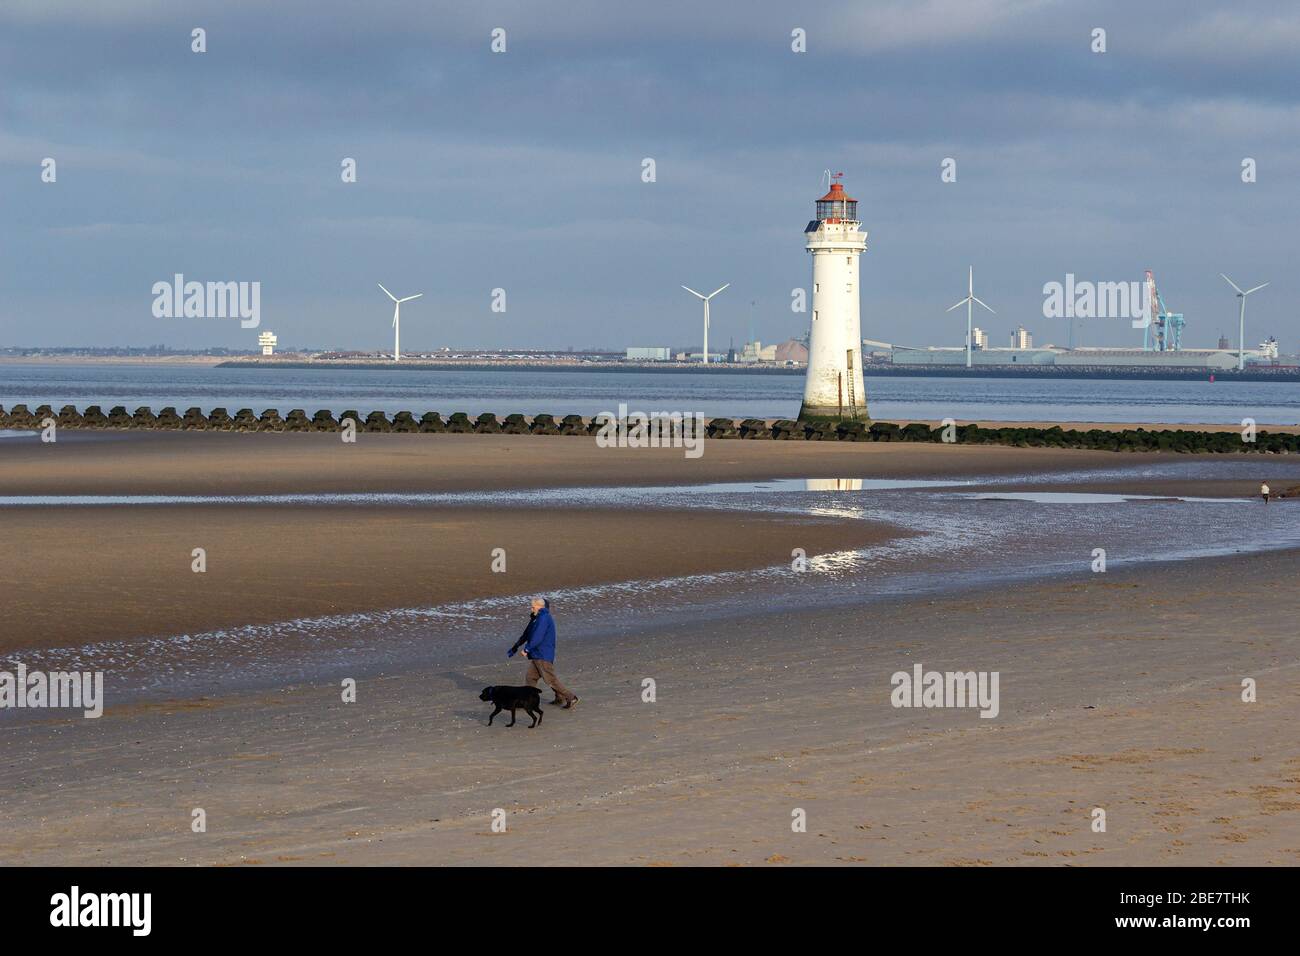 Nuova spiaggia di Brighton, camminatore per cani e faro a bassa marea. Seaforth di Liverpool si attracca sullo sfondo. Foto Stock